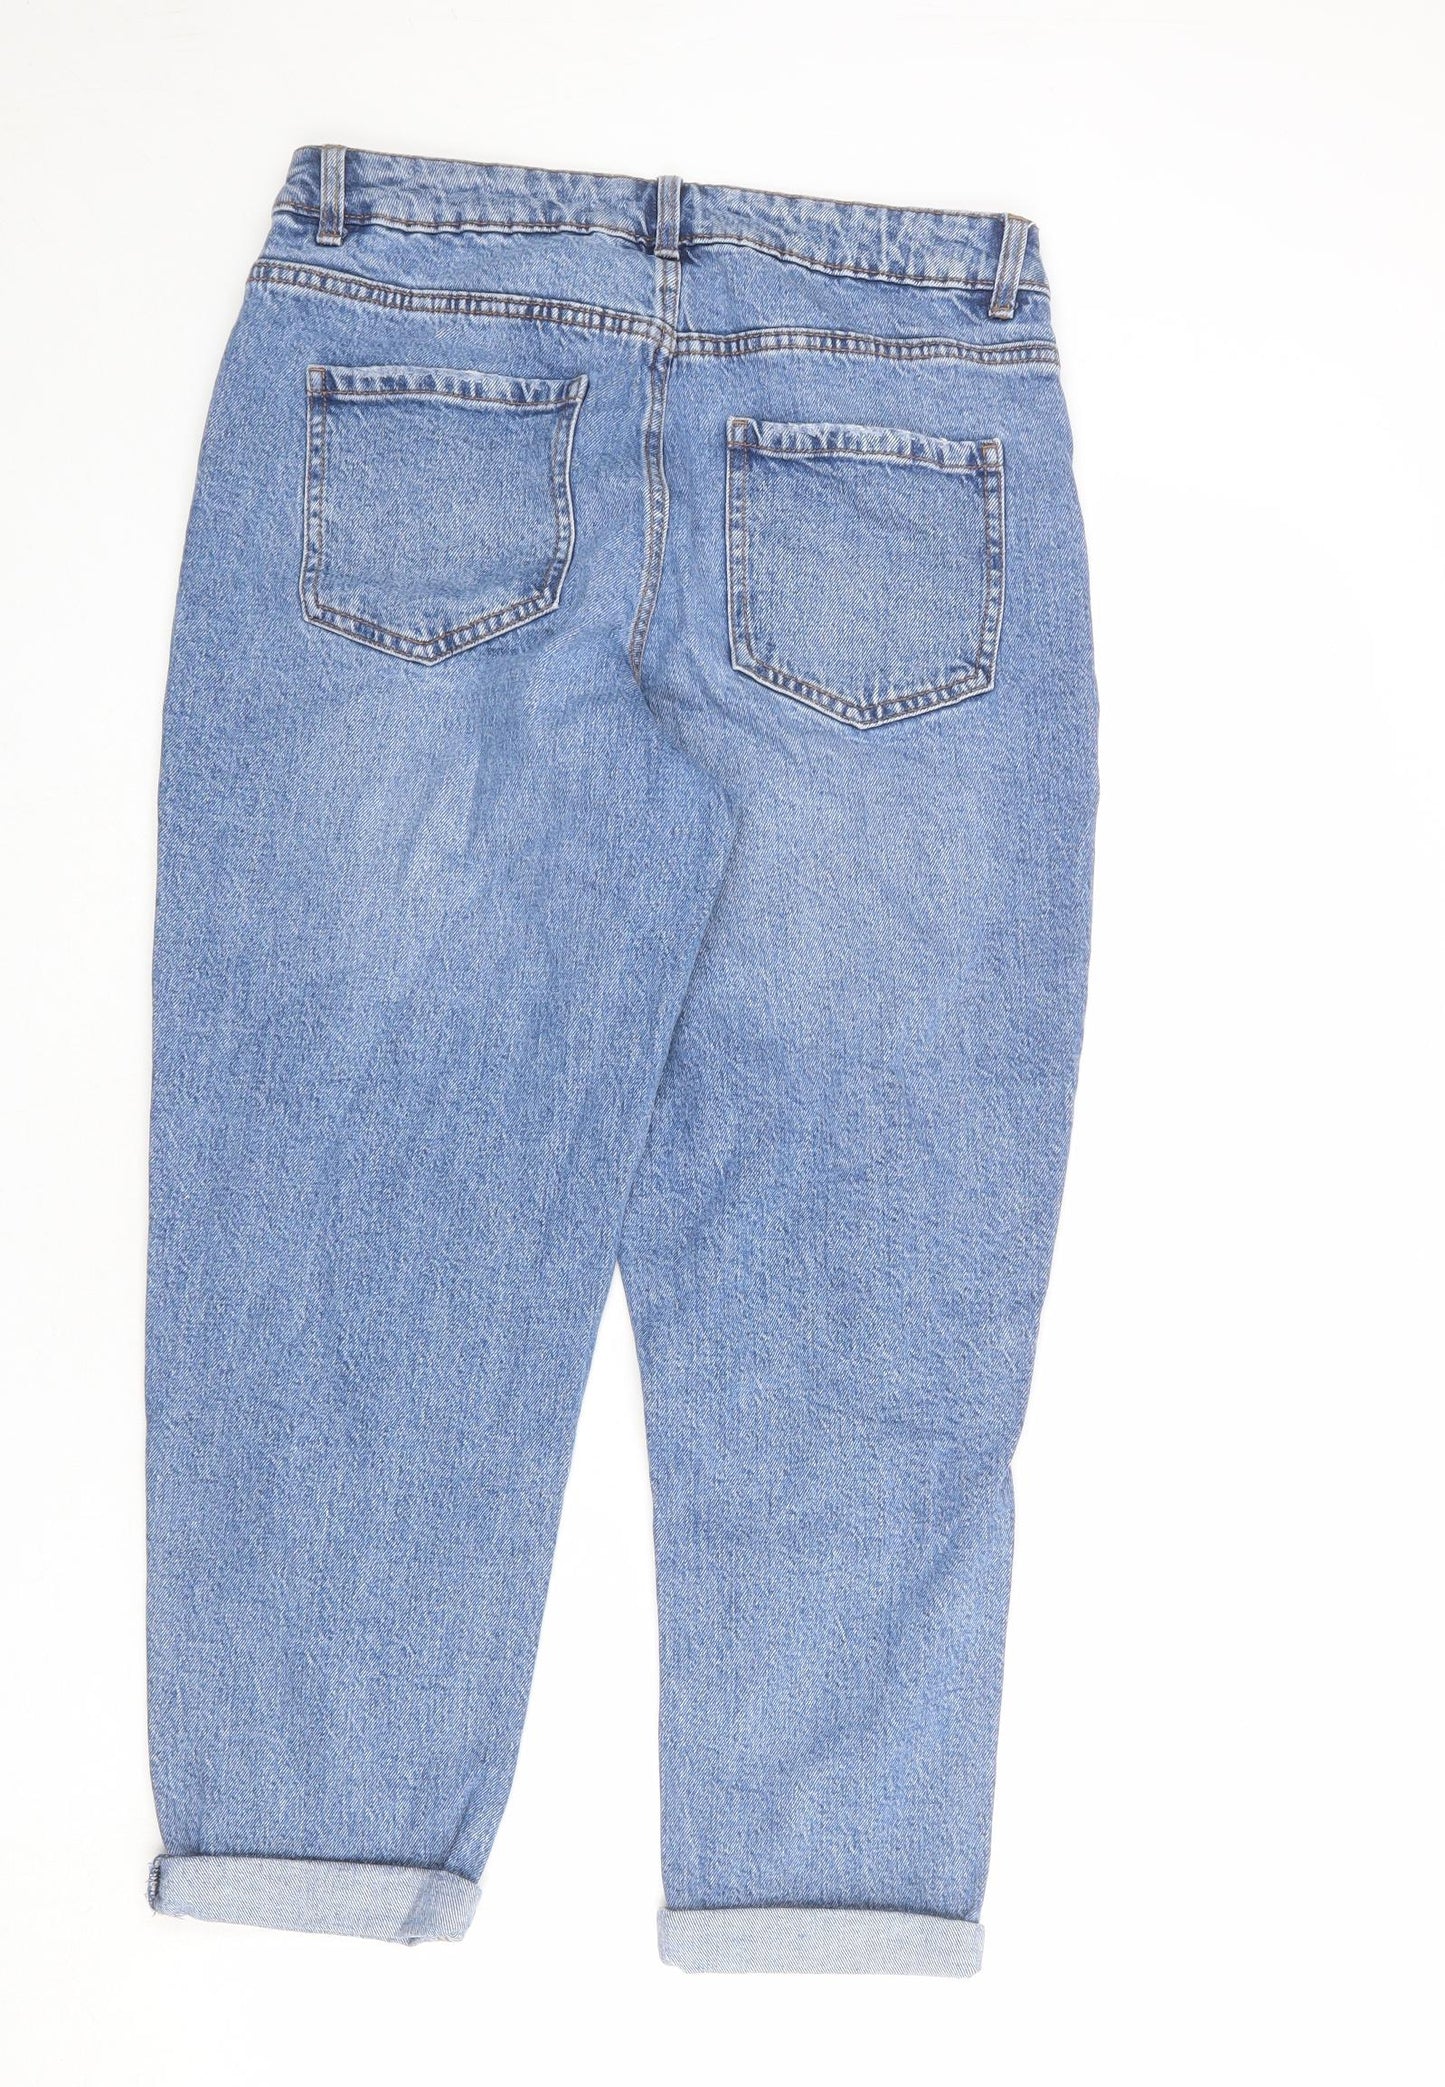 New Look Womens Blue Cotton Boyfriend Jeans Size 12 L25 in Regular Zip